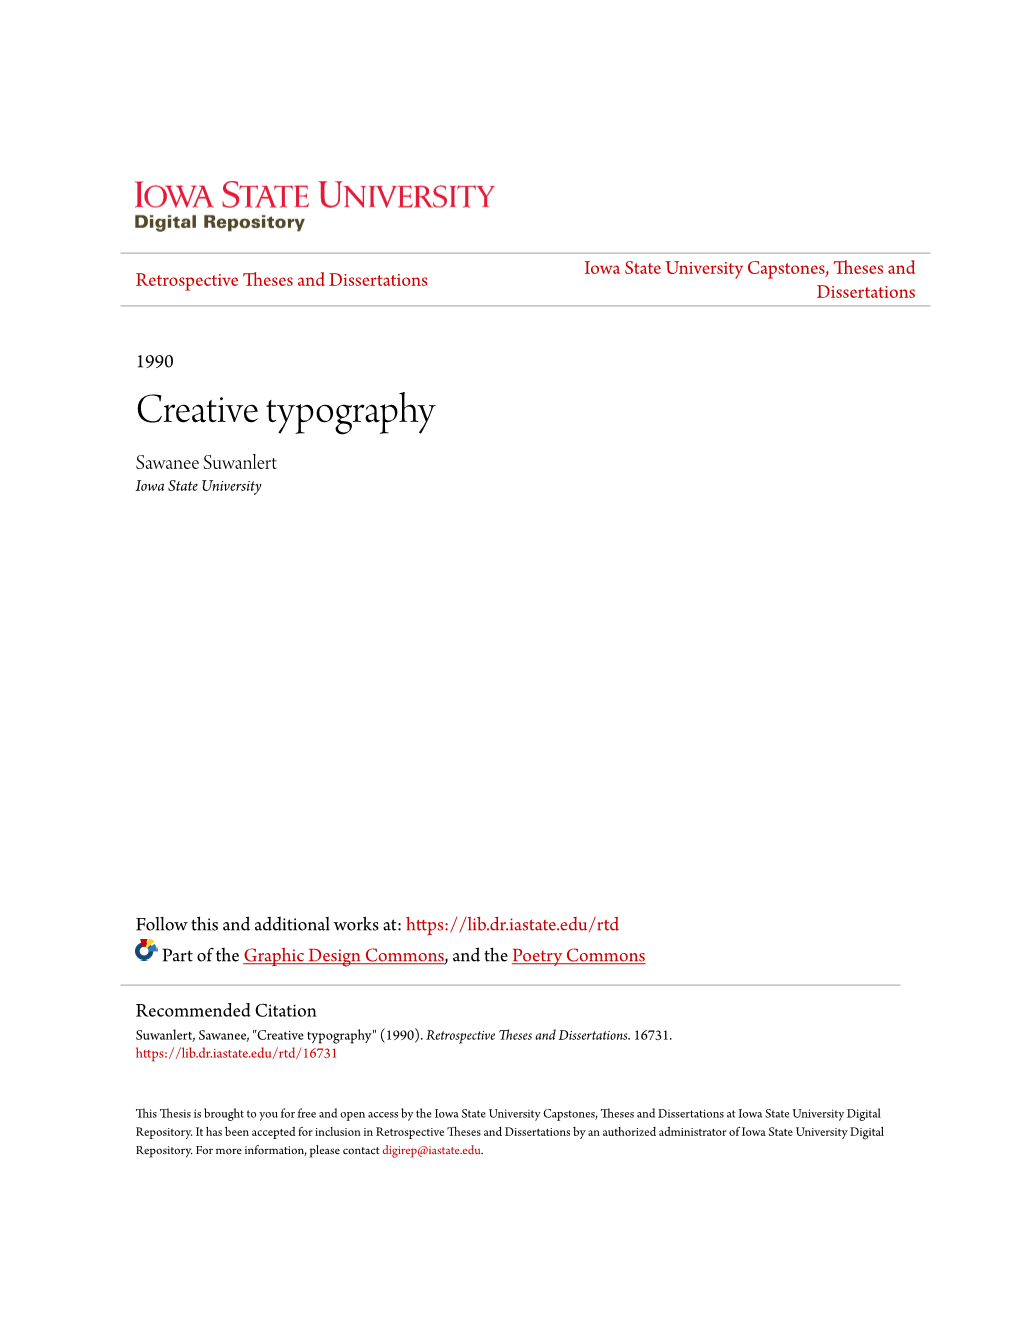 Creative Typography Sawanee Suwanlert Iowa State University